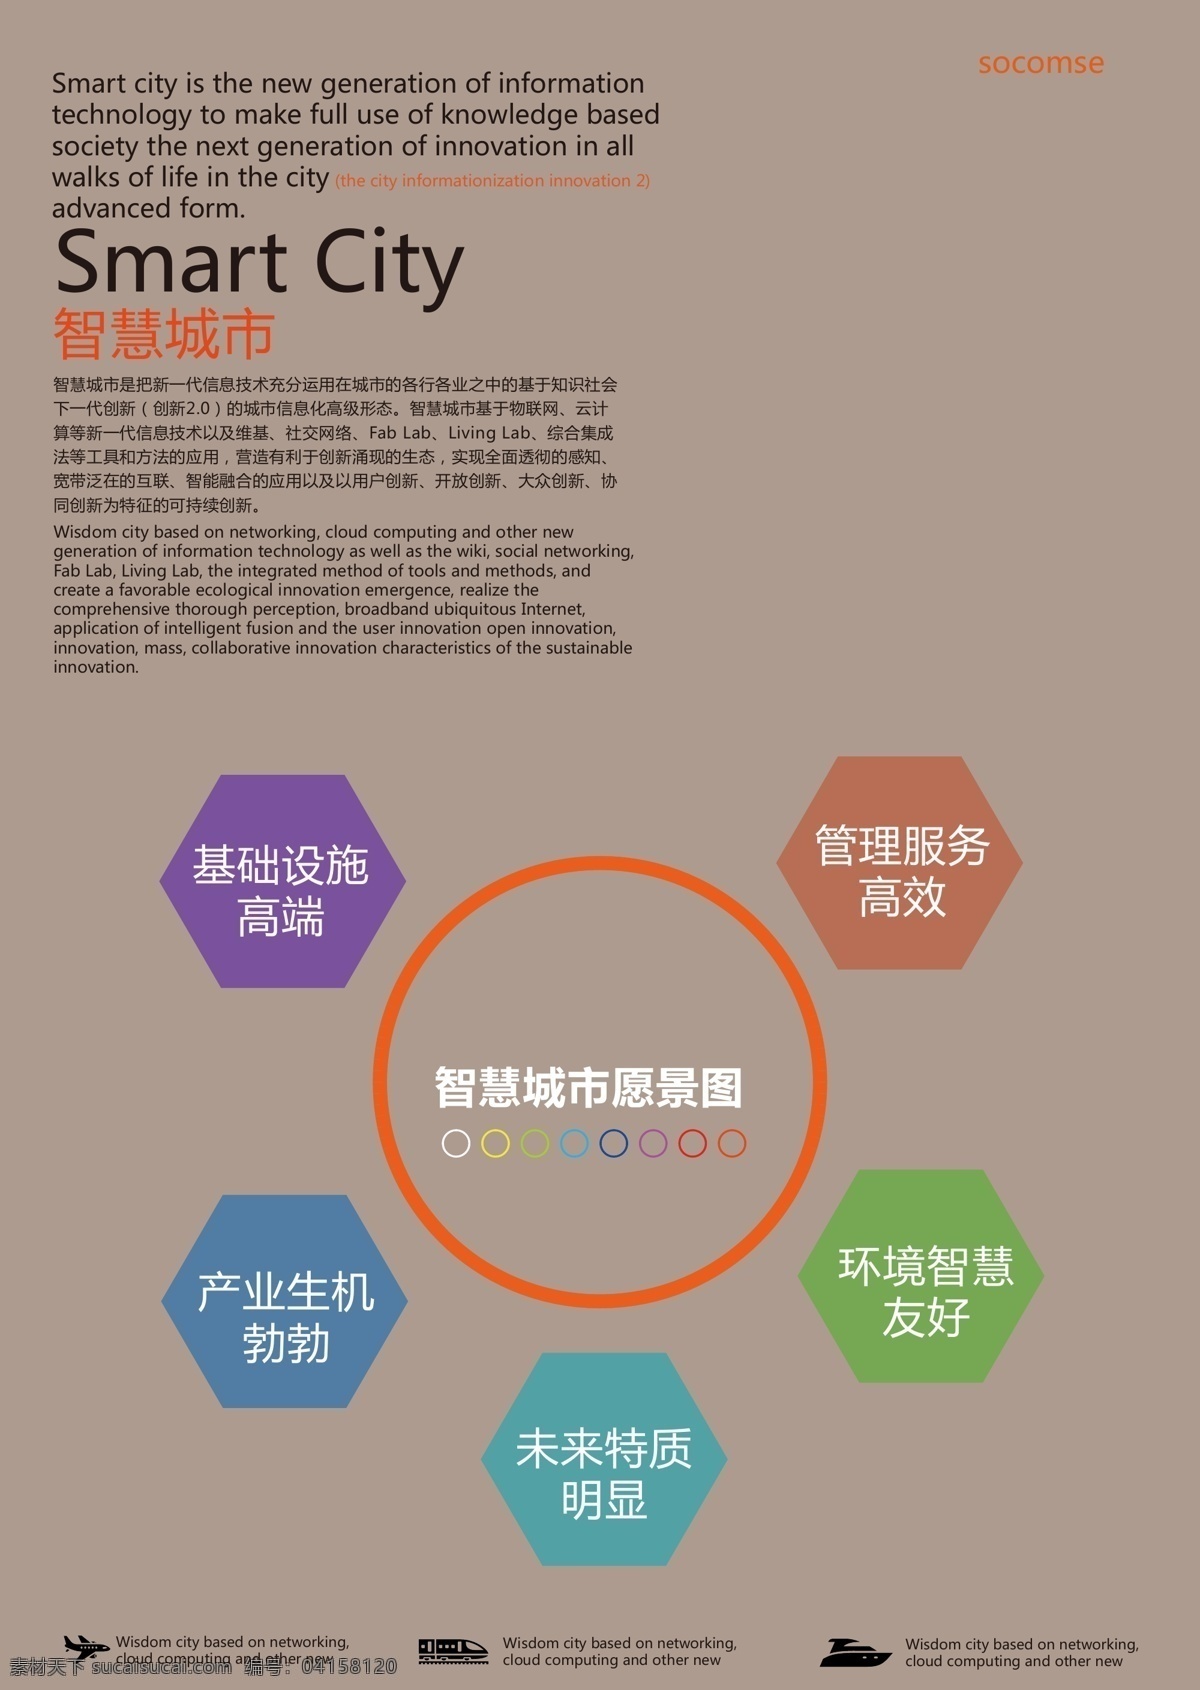 dm 城市 创意 广告 宣传单 招贴 智慧 智慧城市 矢量 模板下载 系统图 愿景图 海报 psd源文件